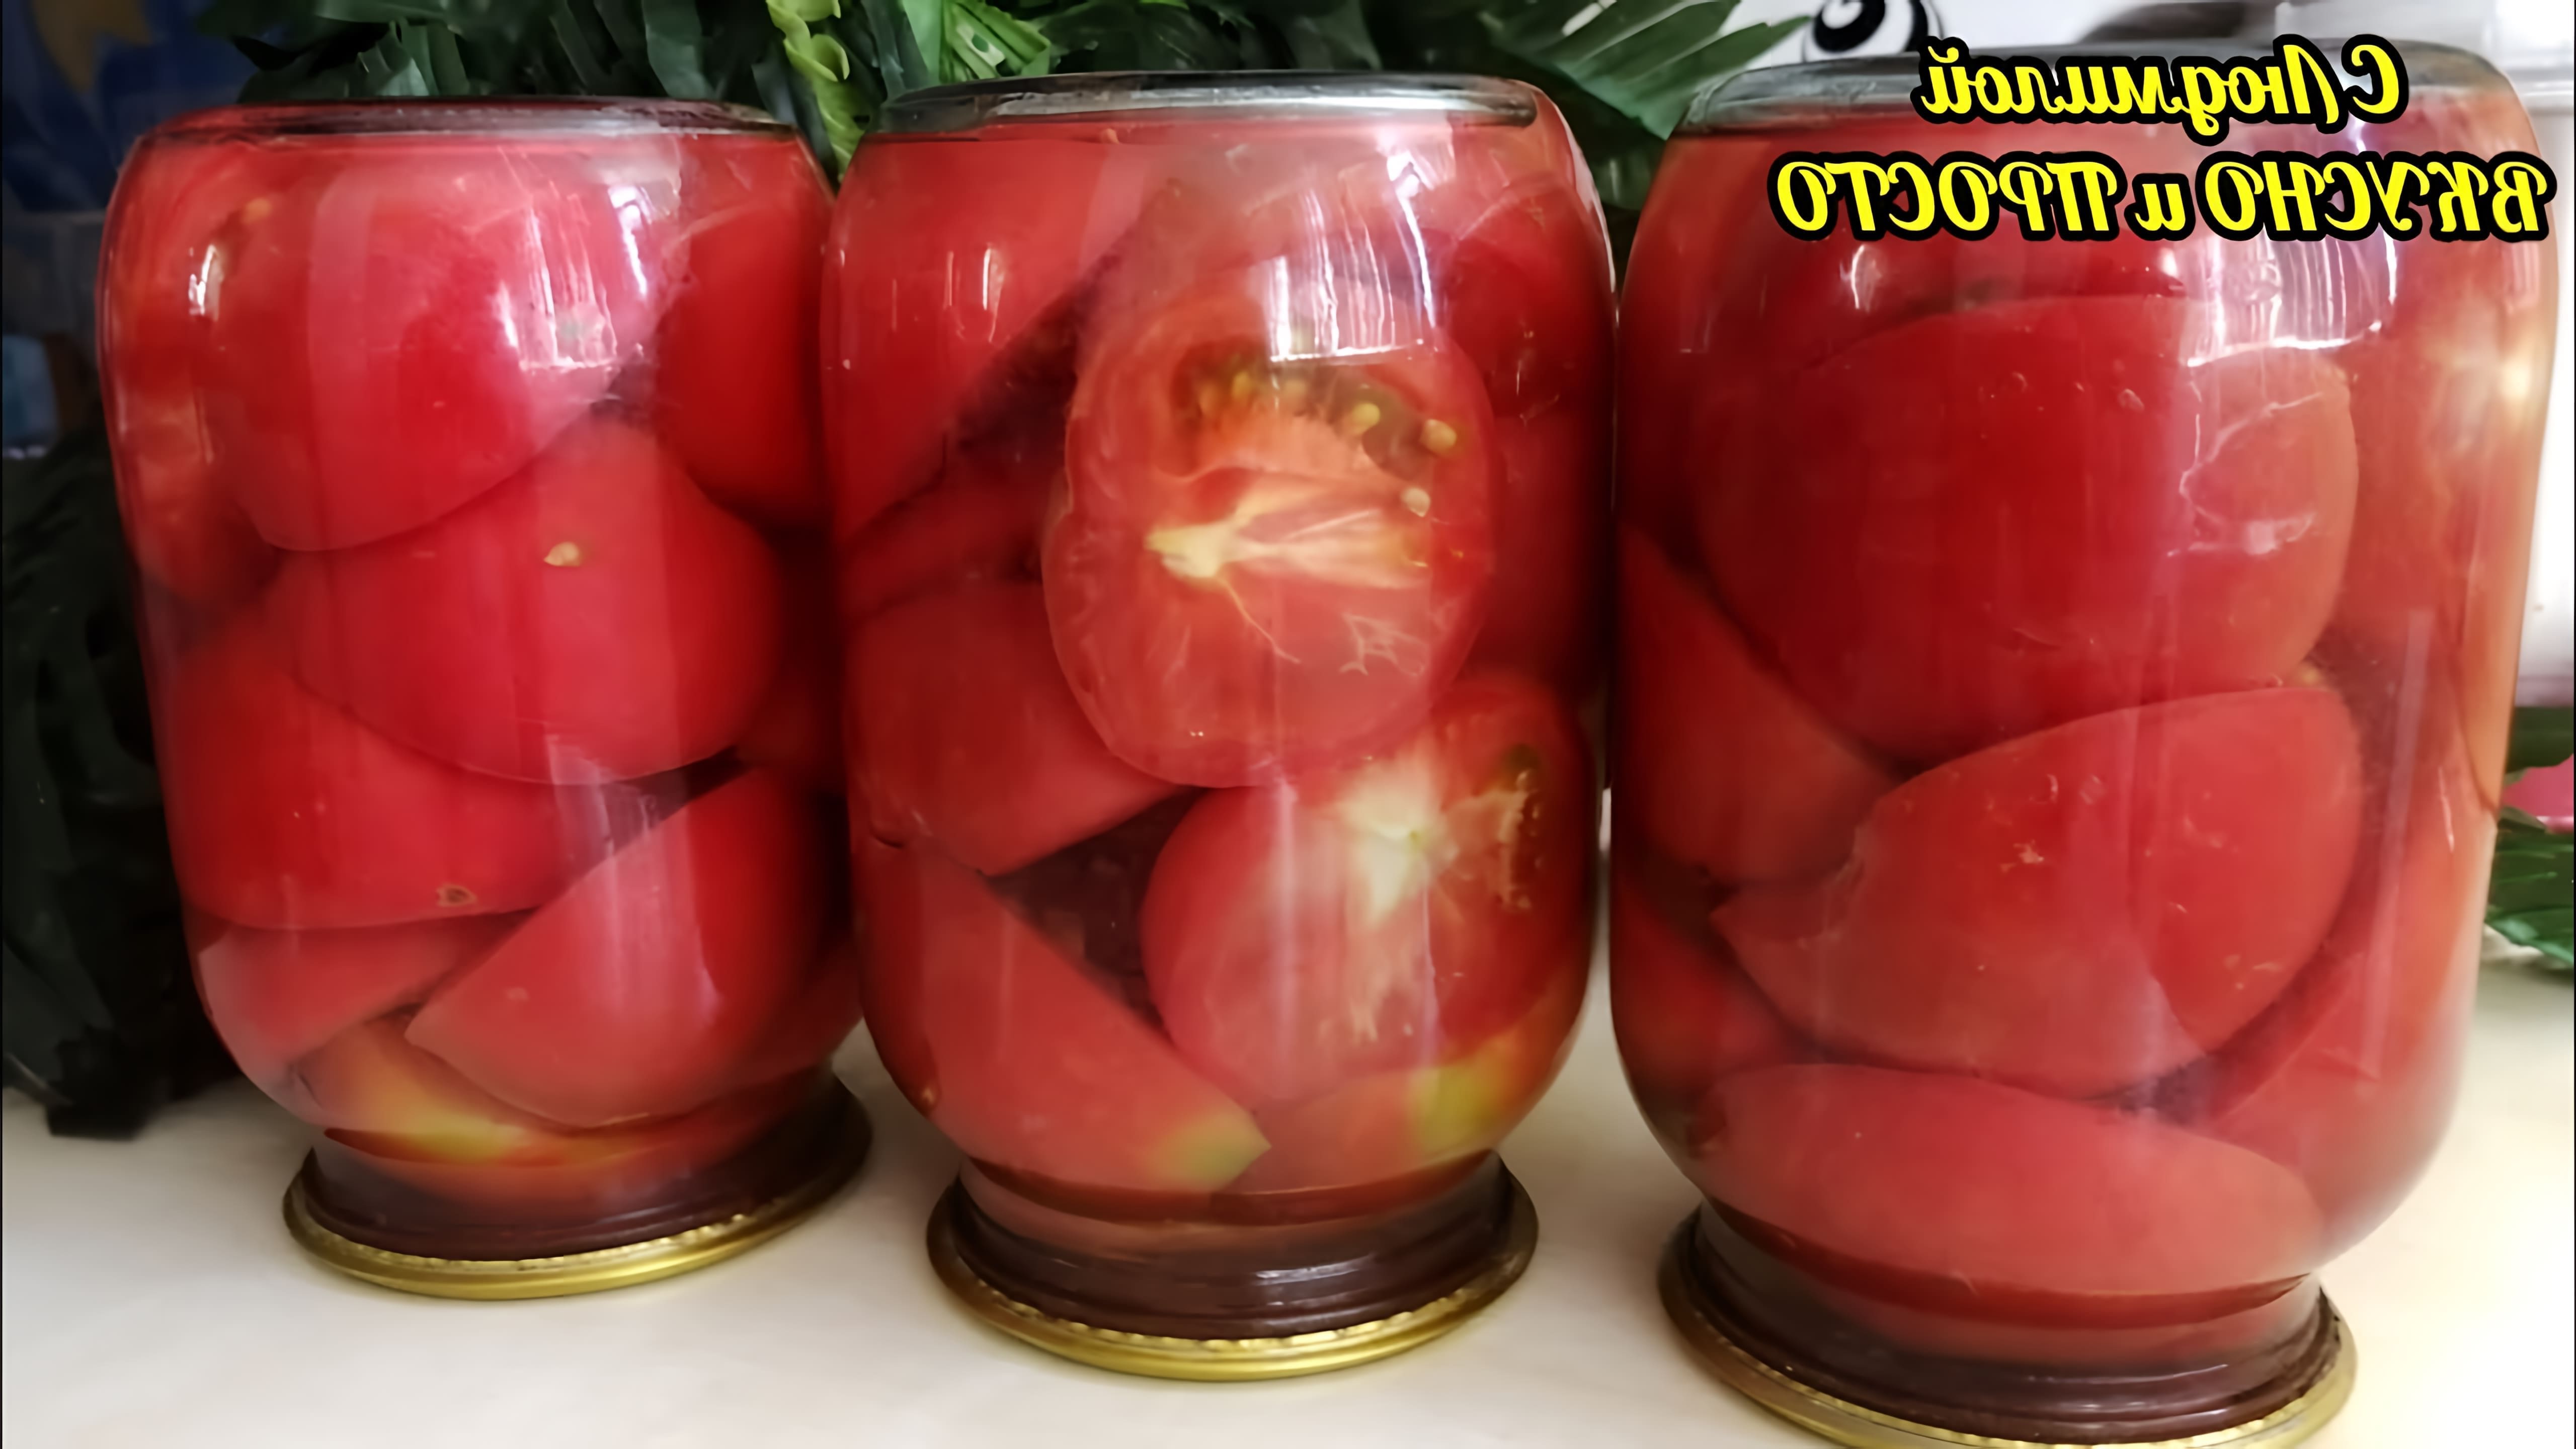 В данном видео демонстрируется простой и быстрый способ сохранения помидоров на зиму